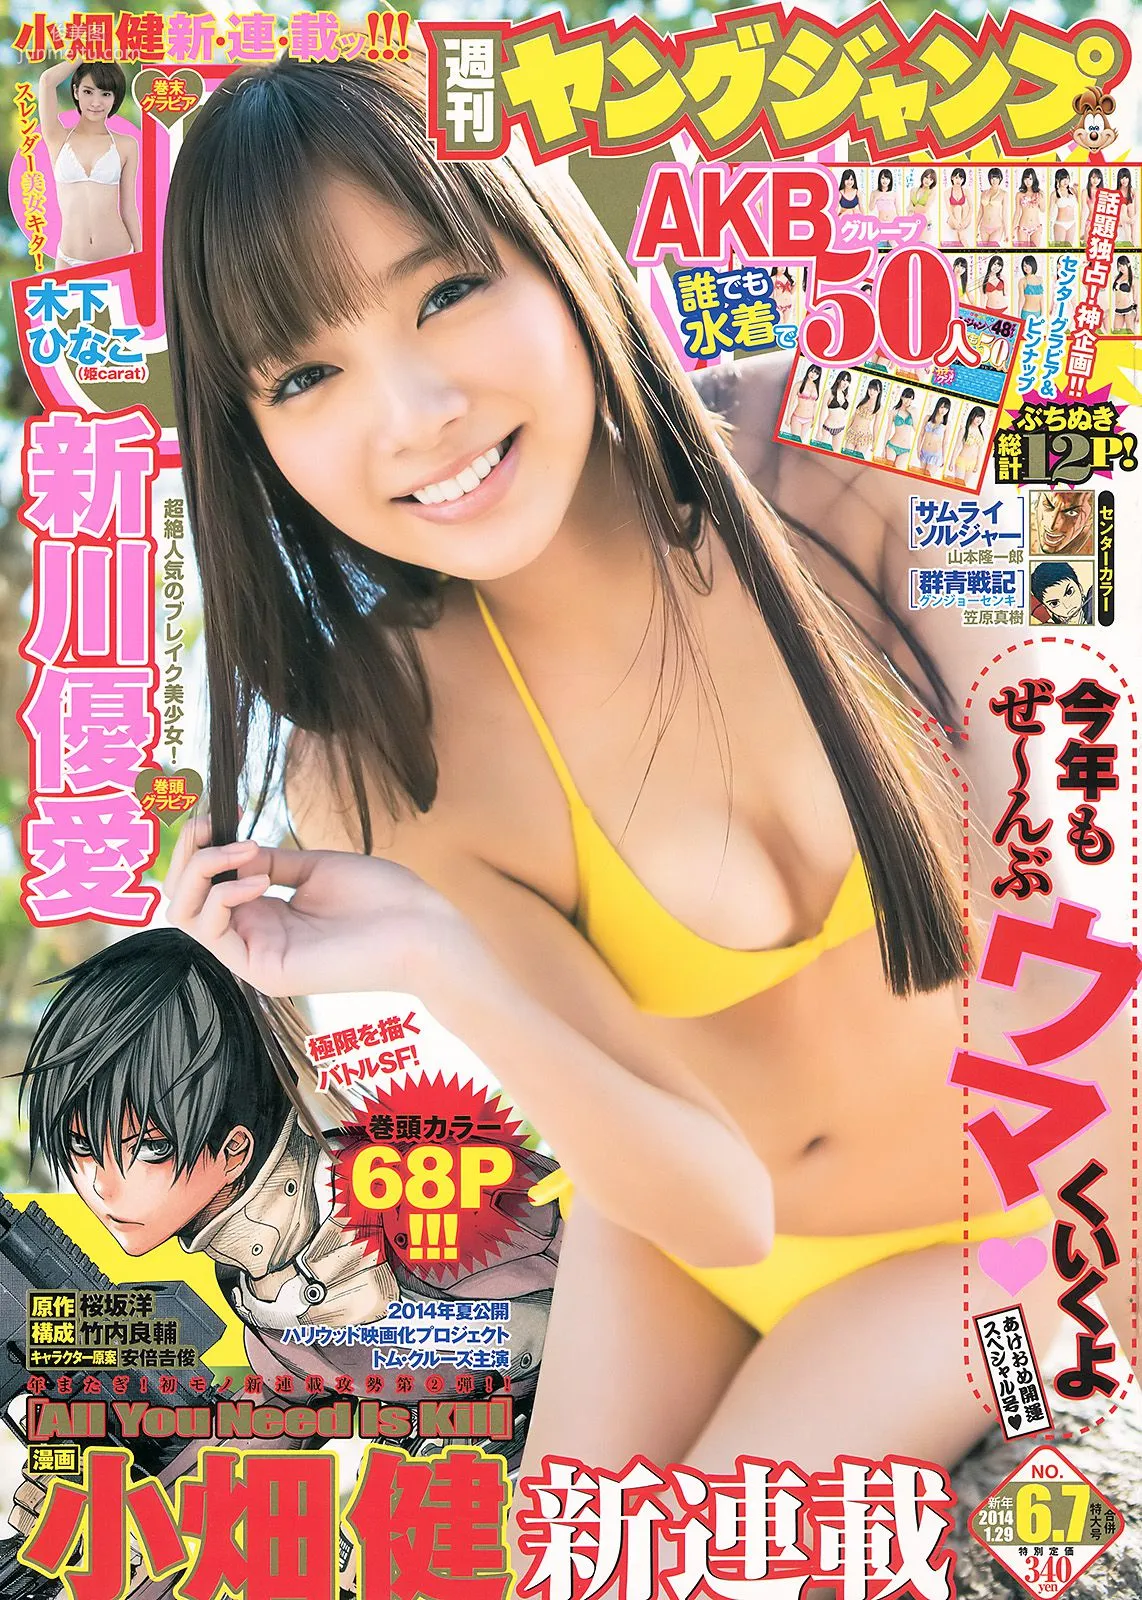 新川優愛 48グループ 木下ひなこ [Weekly Young Jump] 2014年No.06-07写真杂志1